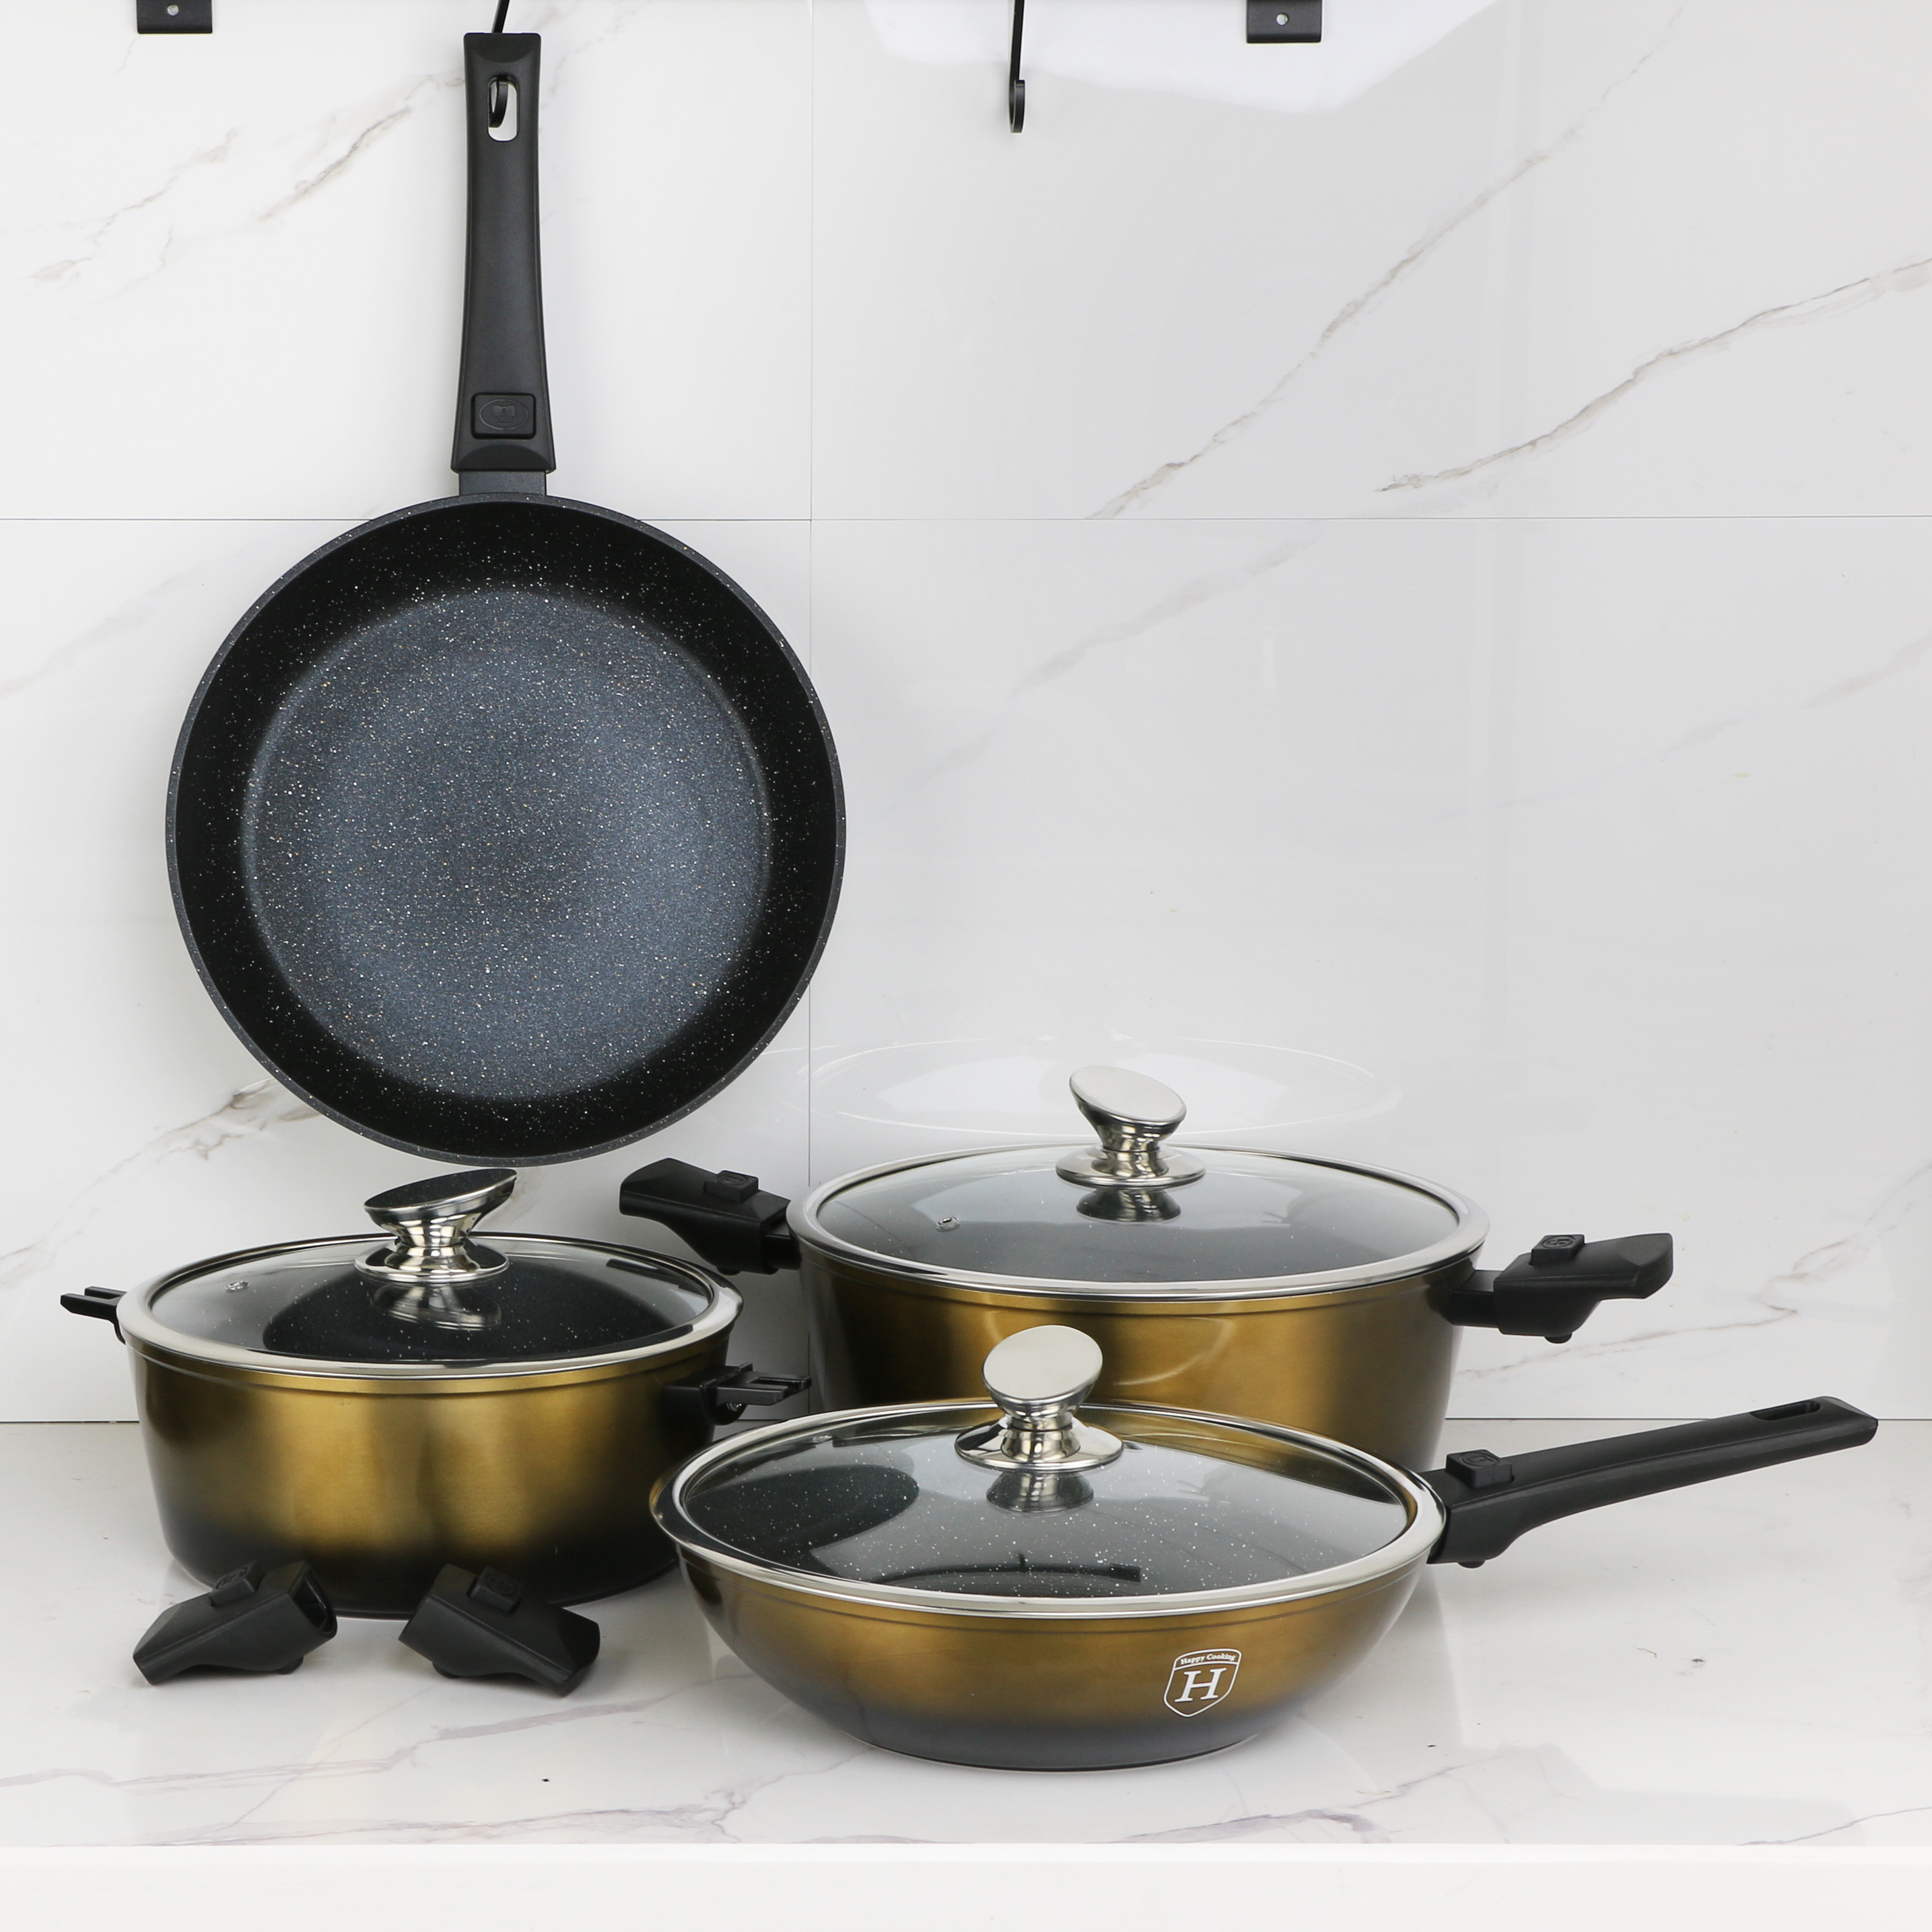 Cooking Pots and Pans Set Detachable Handle